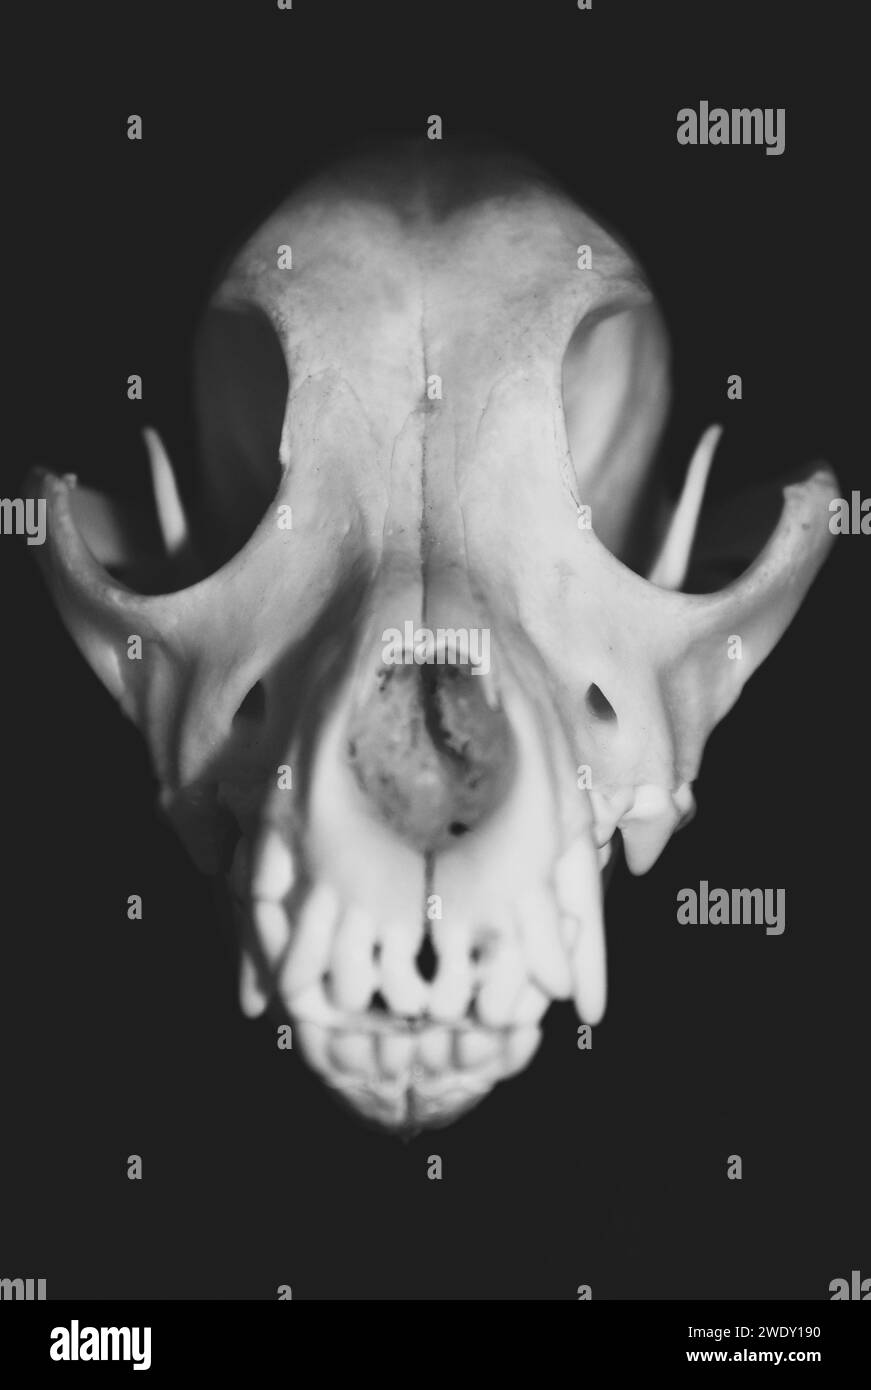 Gros plan sur un crâne de chien, vu de face. Photographie en noir et blanc. Spécimen du musée Canis lupus familiaris. Banque D'Images